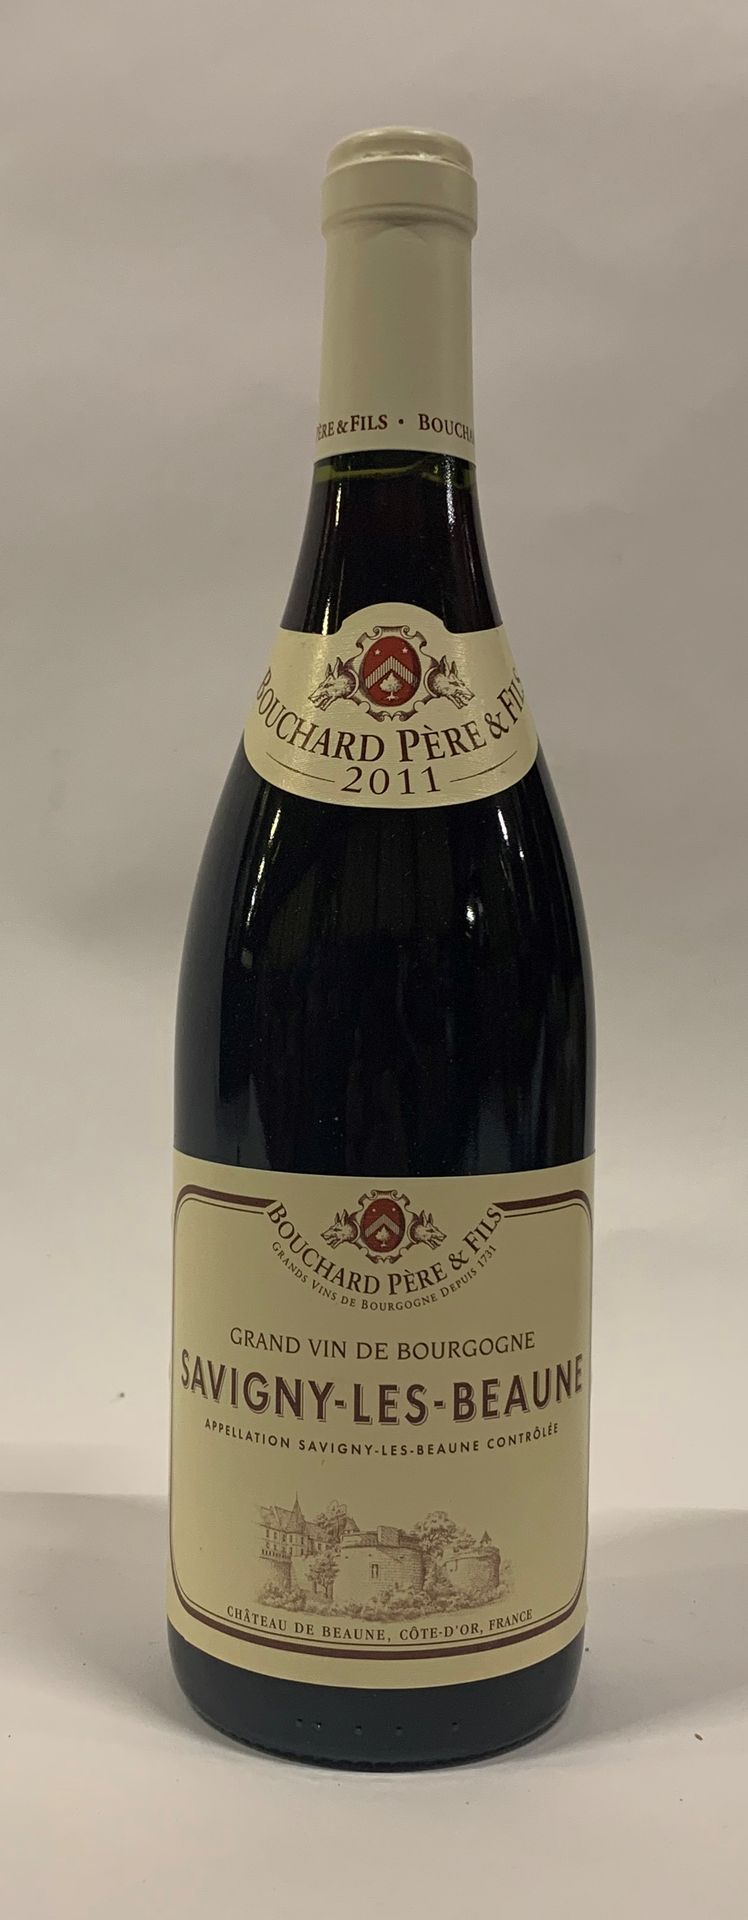 Null ● SAVIGNY-LÈS-BEAUNE | Bouchard Père & Fils, 2011 

6 bouteilles 

Réf. 2